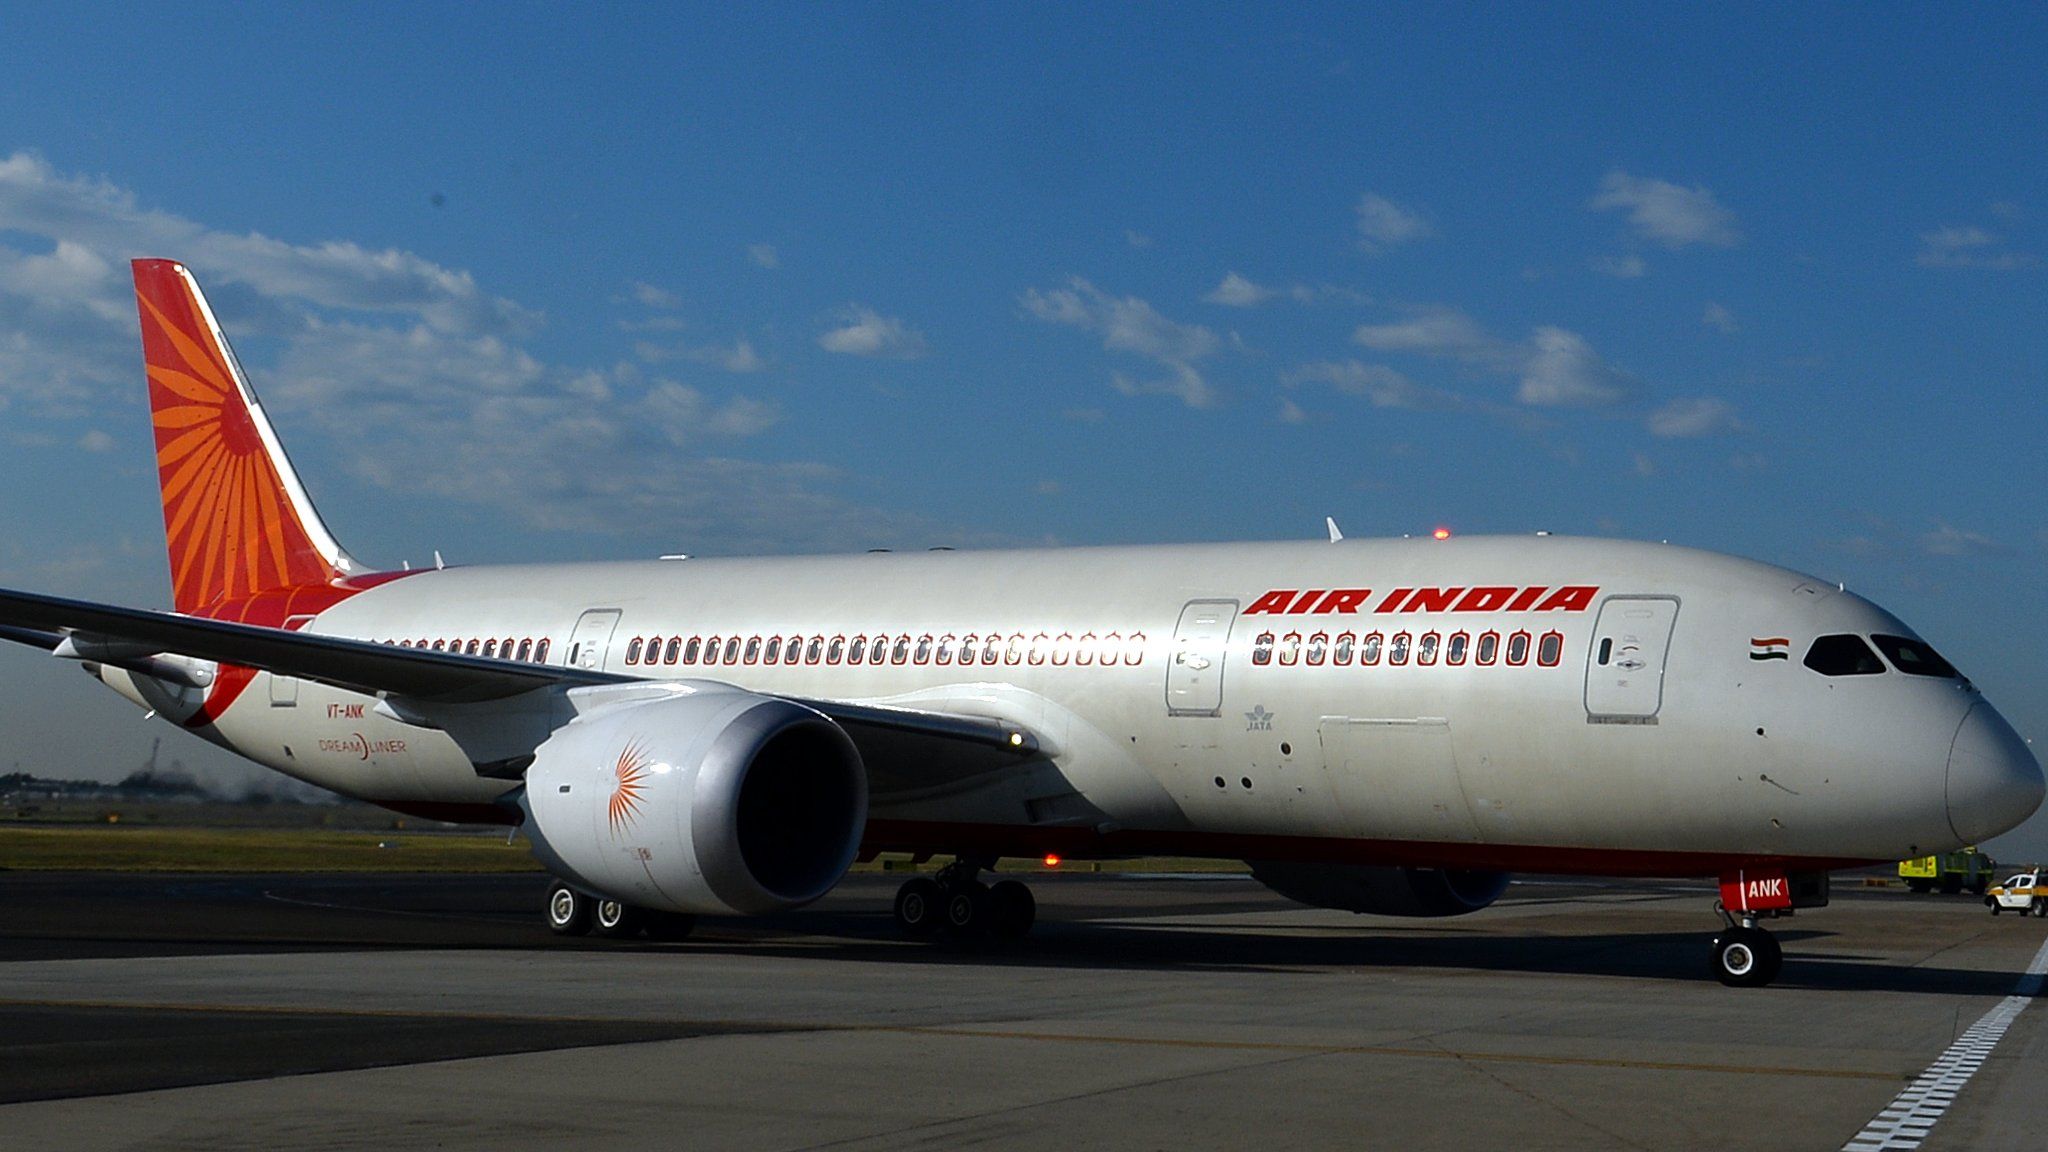 An Air India plane